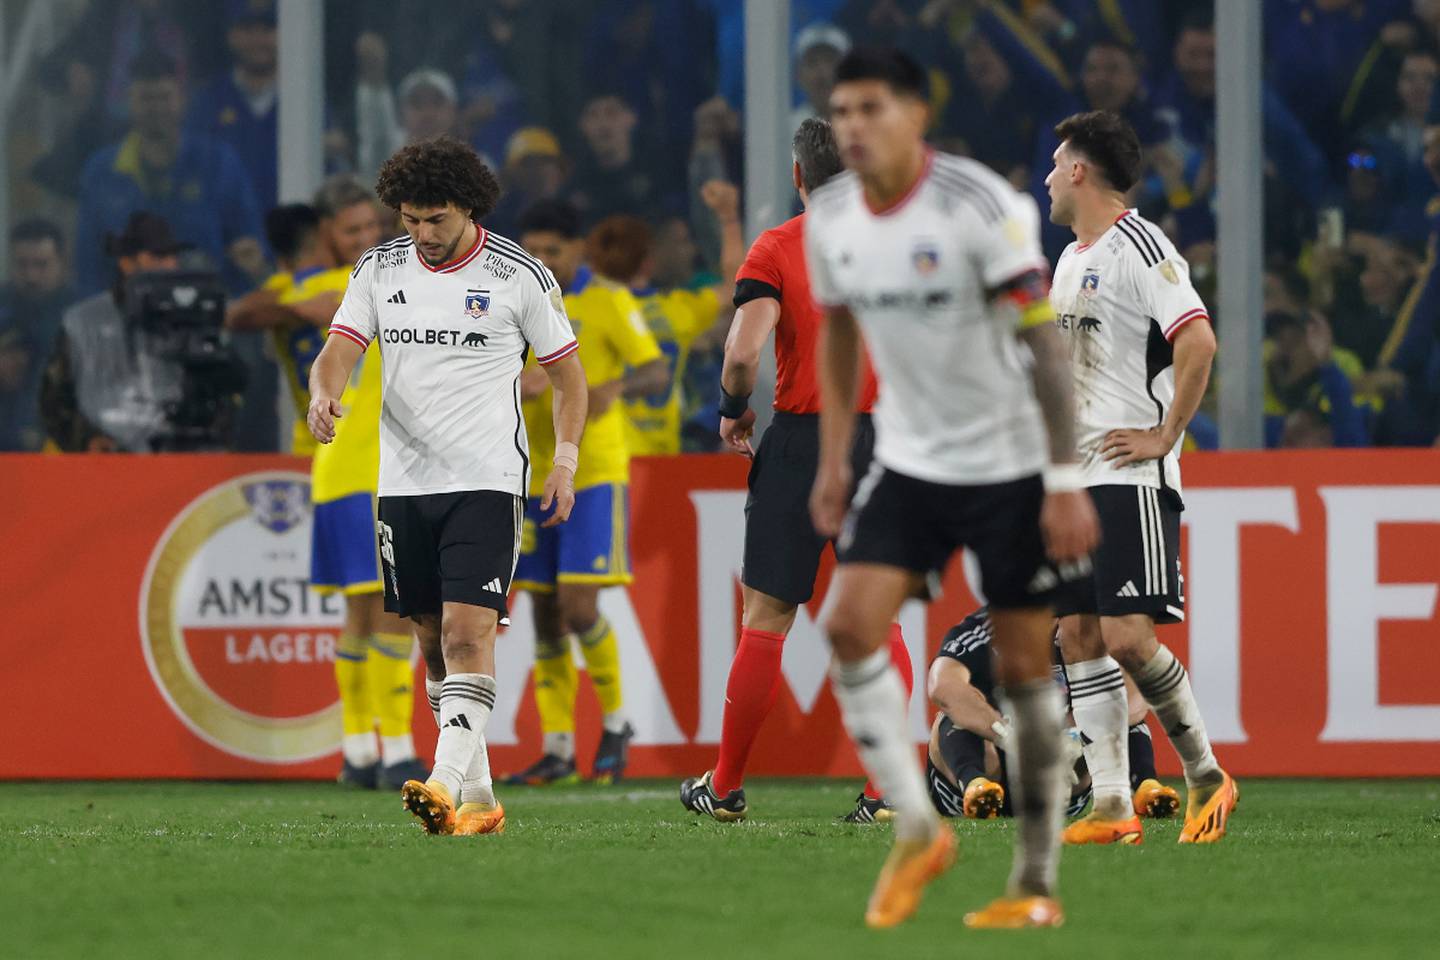 Jugadores de Colo Colo cabizbajos lamentando la derrota ante Boca Juniors en la cancha del Estadio Monumental.